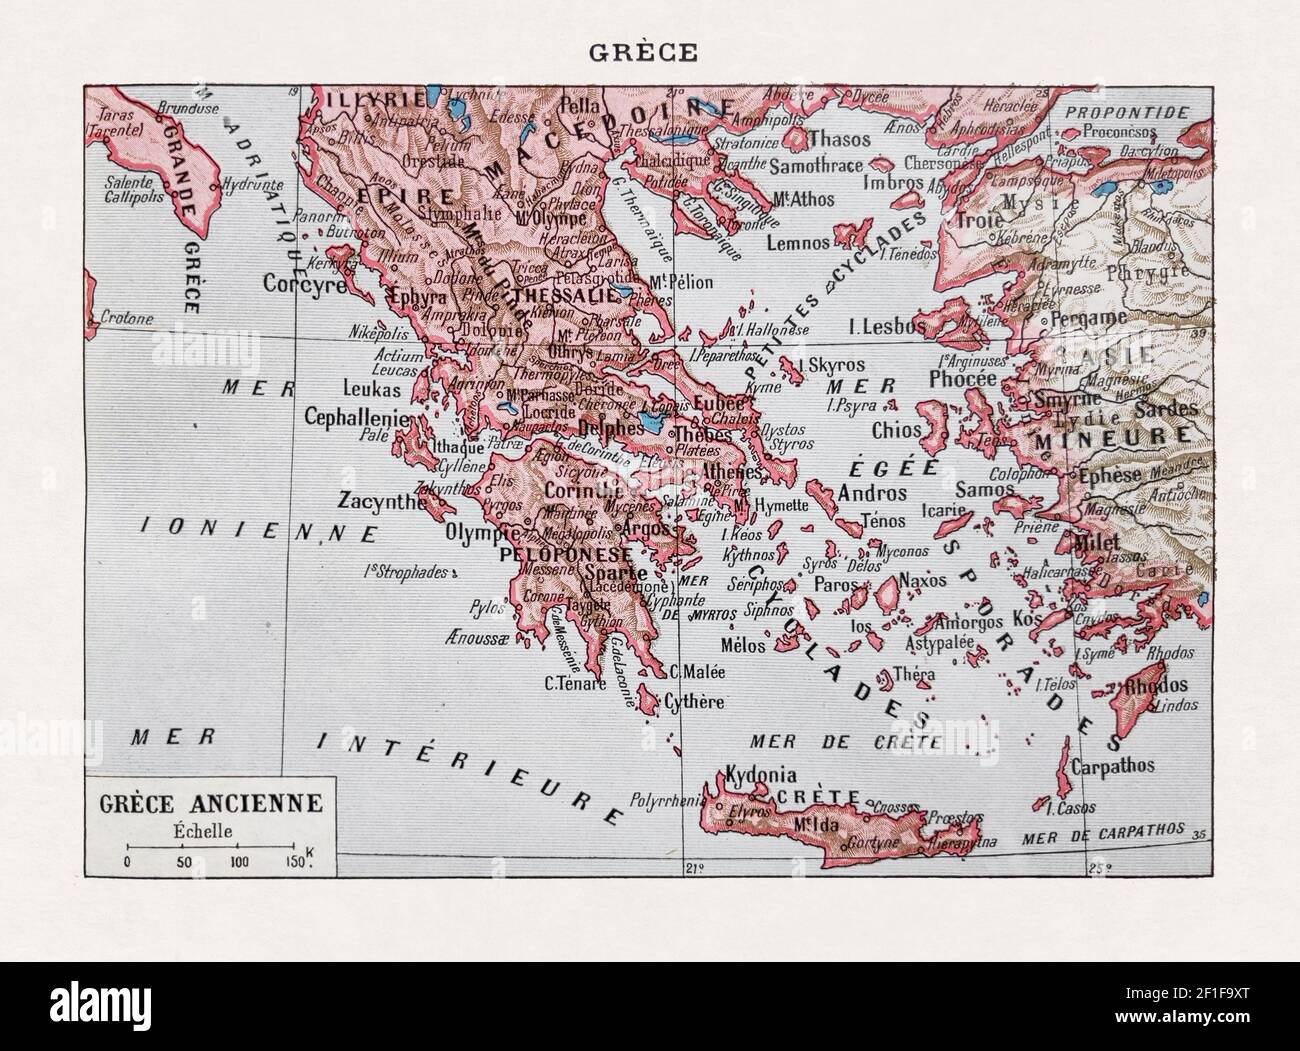 Ancienne carte de la Grèce antique imprimée dans le dictionnaire français 'Dictionnaire complet illustraet' par l'éditeur Larousse en 1889. Banque D'Images